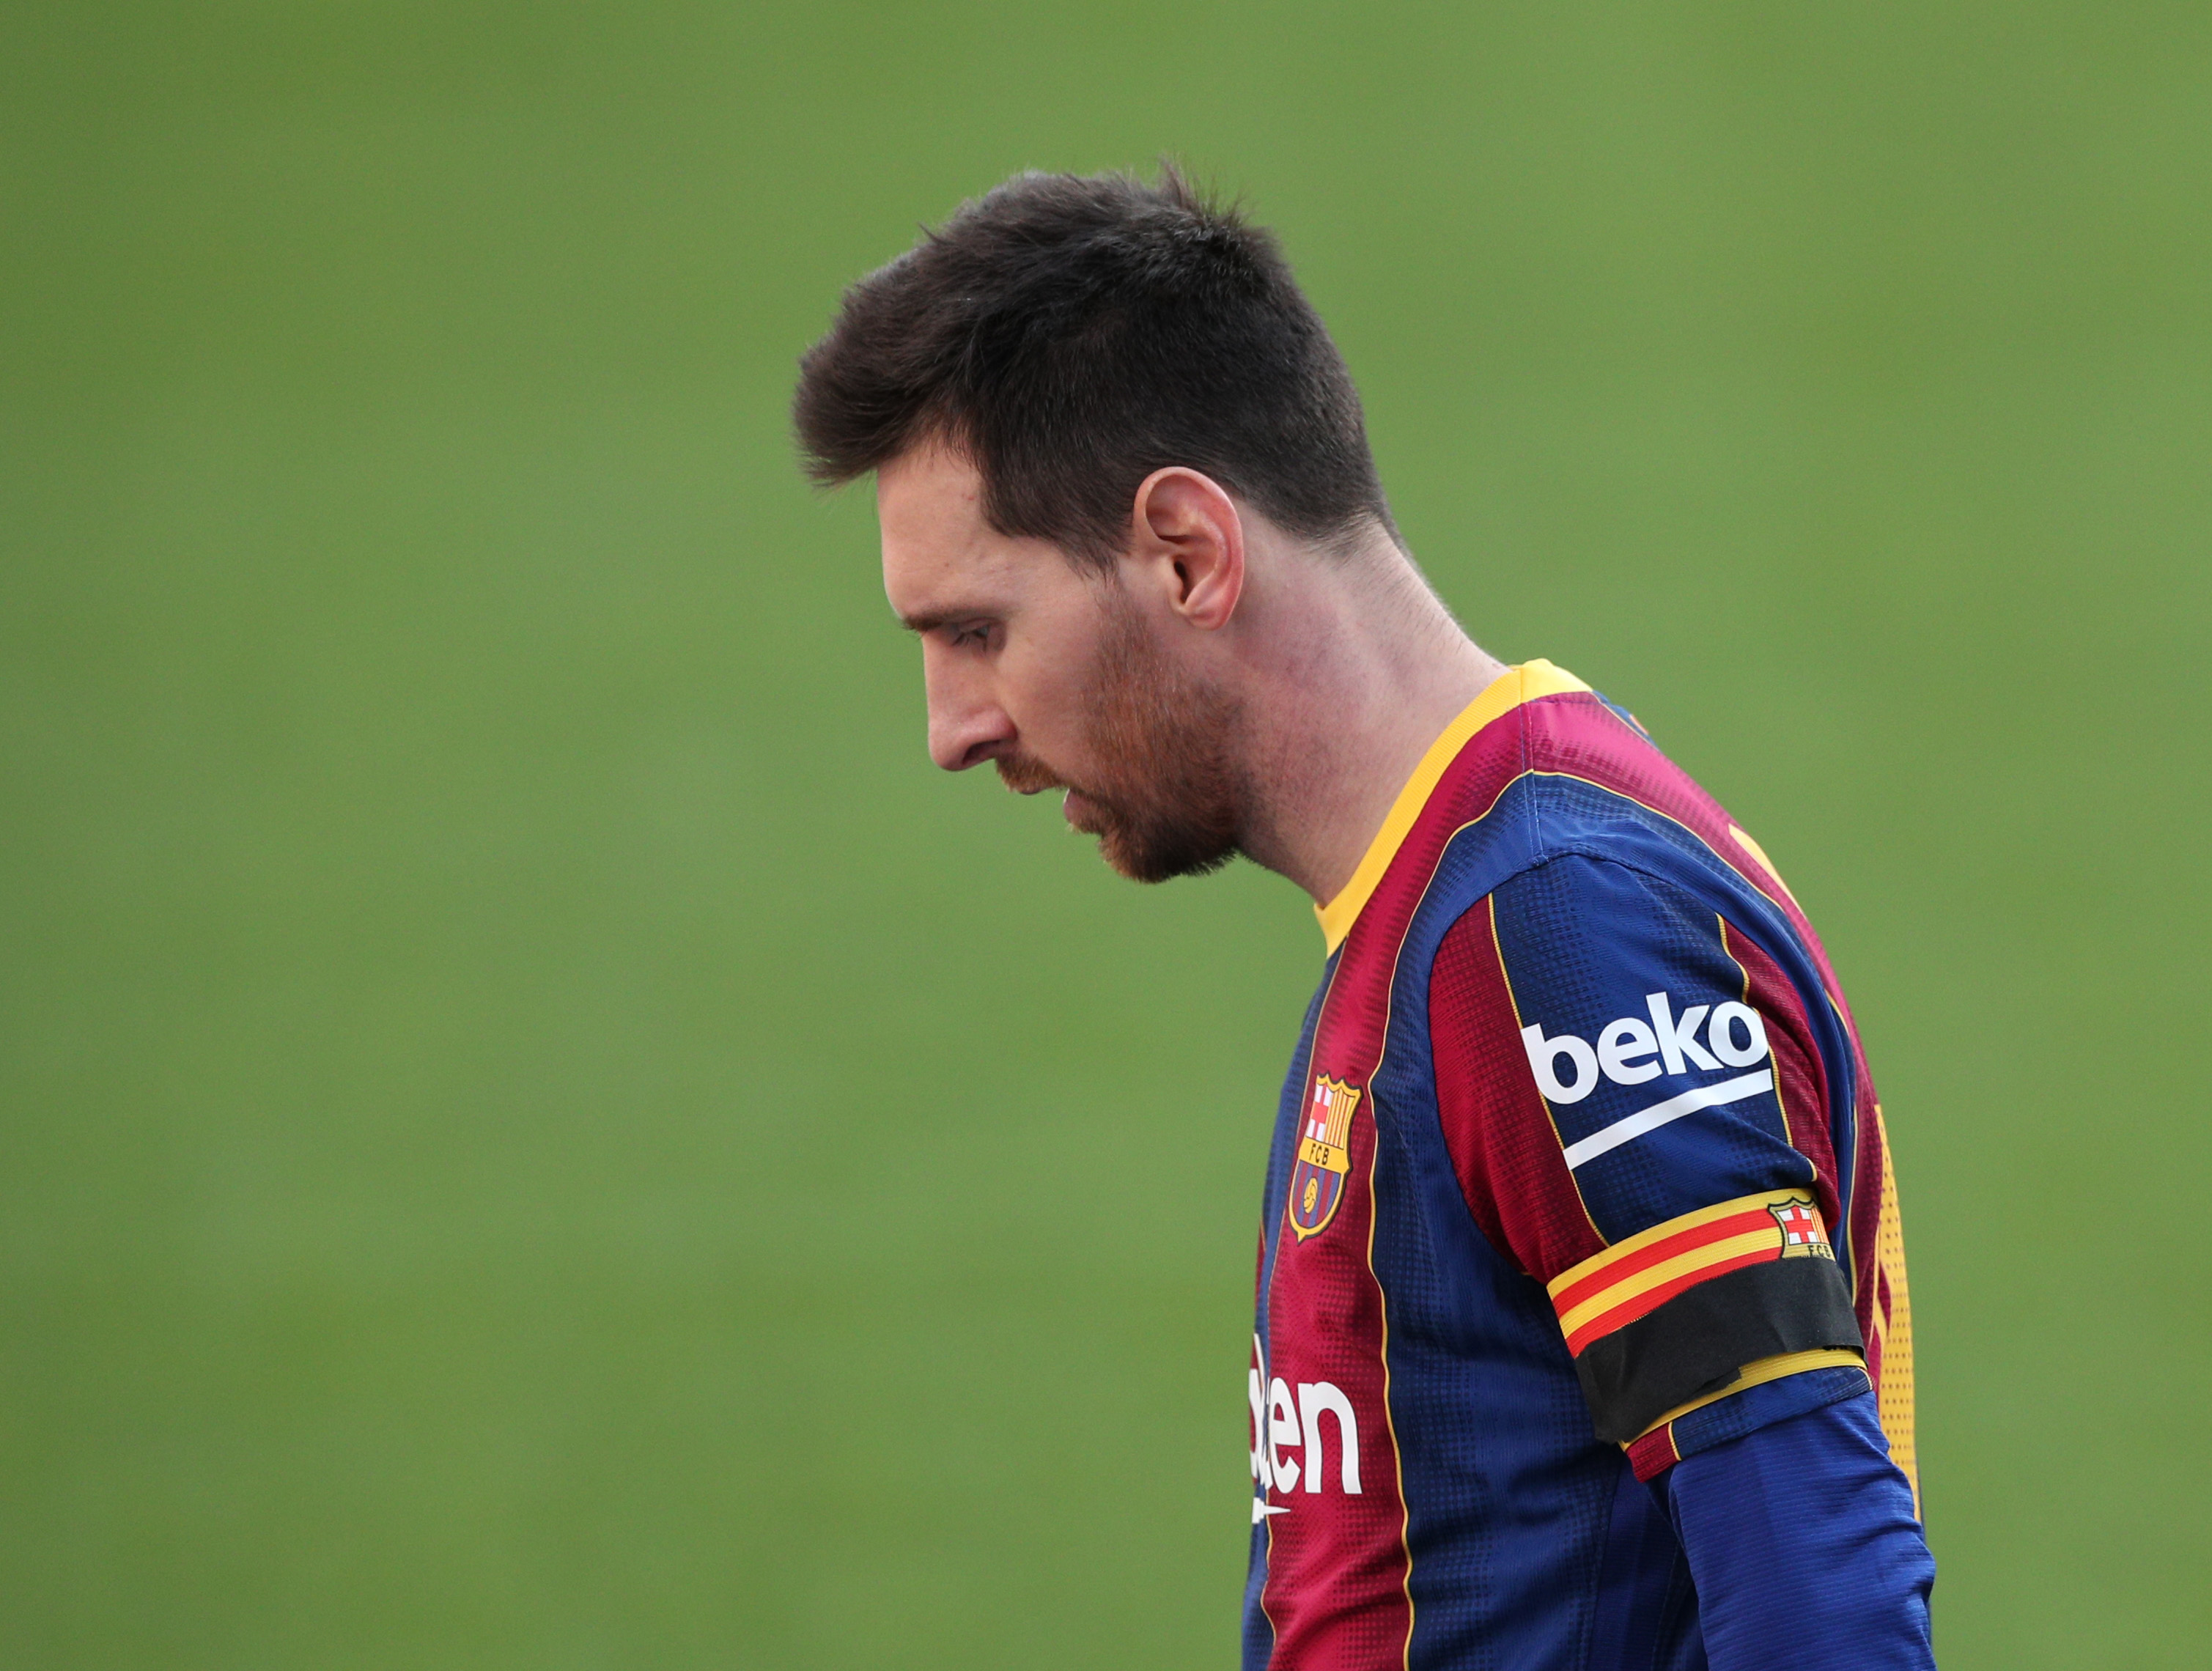 El presidente de la Comisión Gestora aseguró que habría vendido a Messi por el bien económico del club - REUTERS/Albert Gea